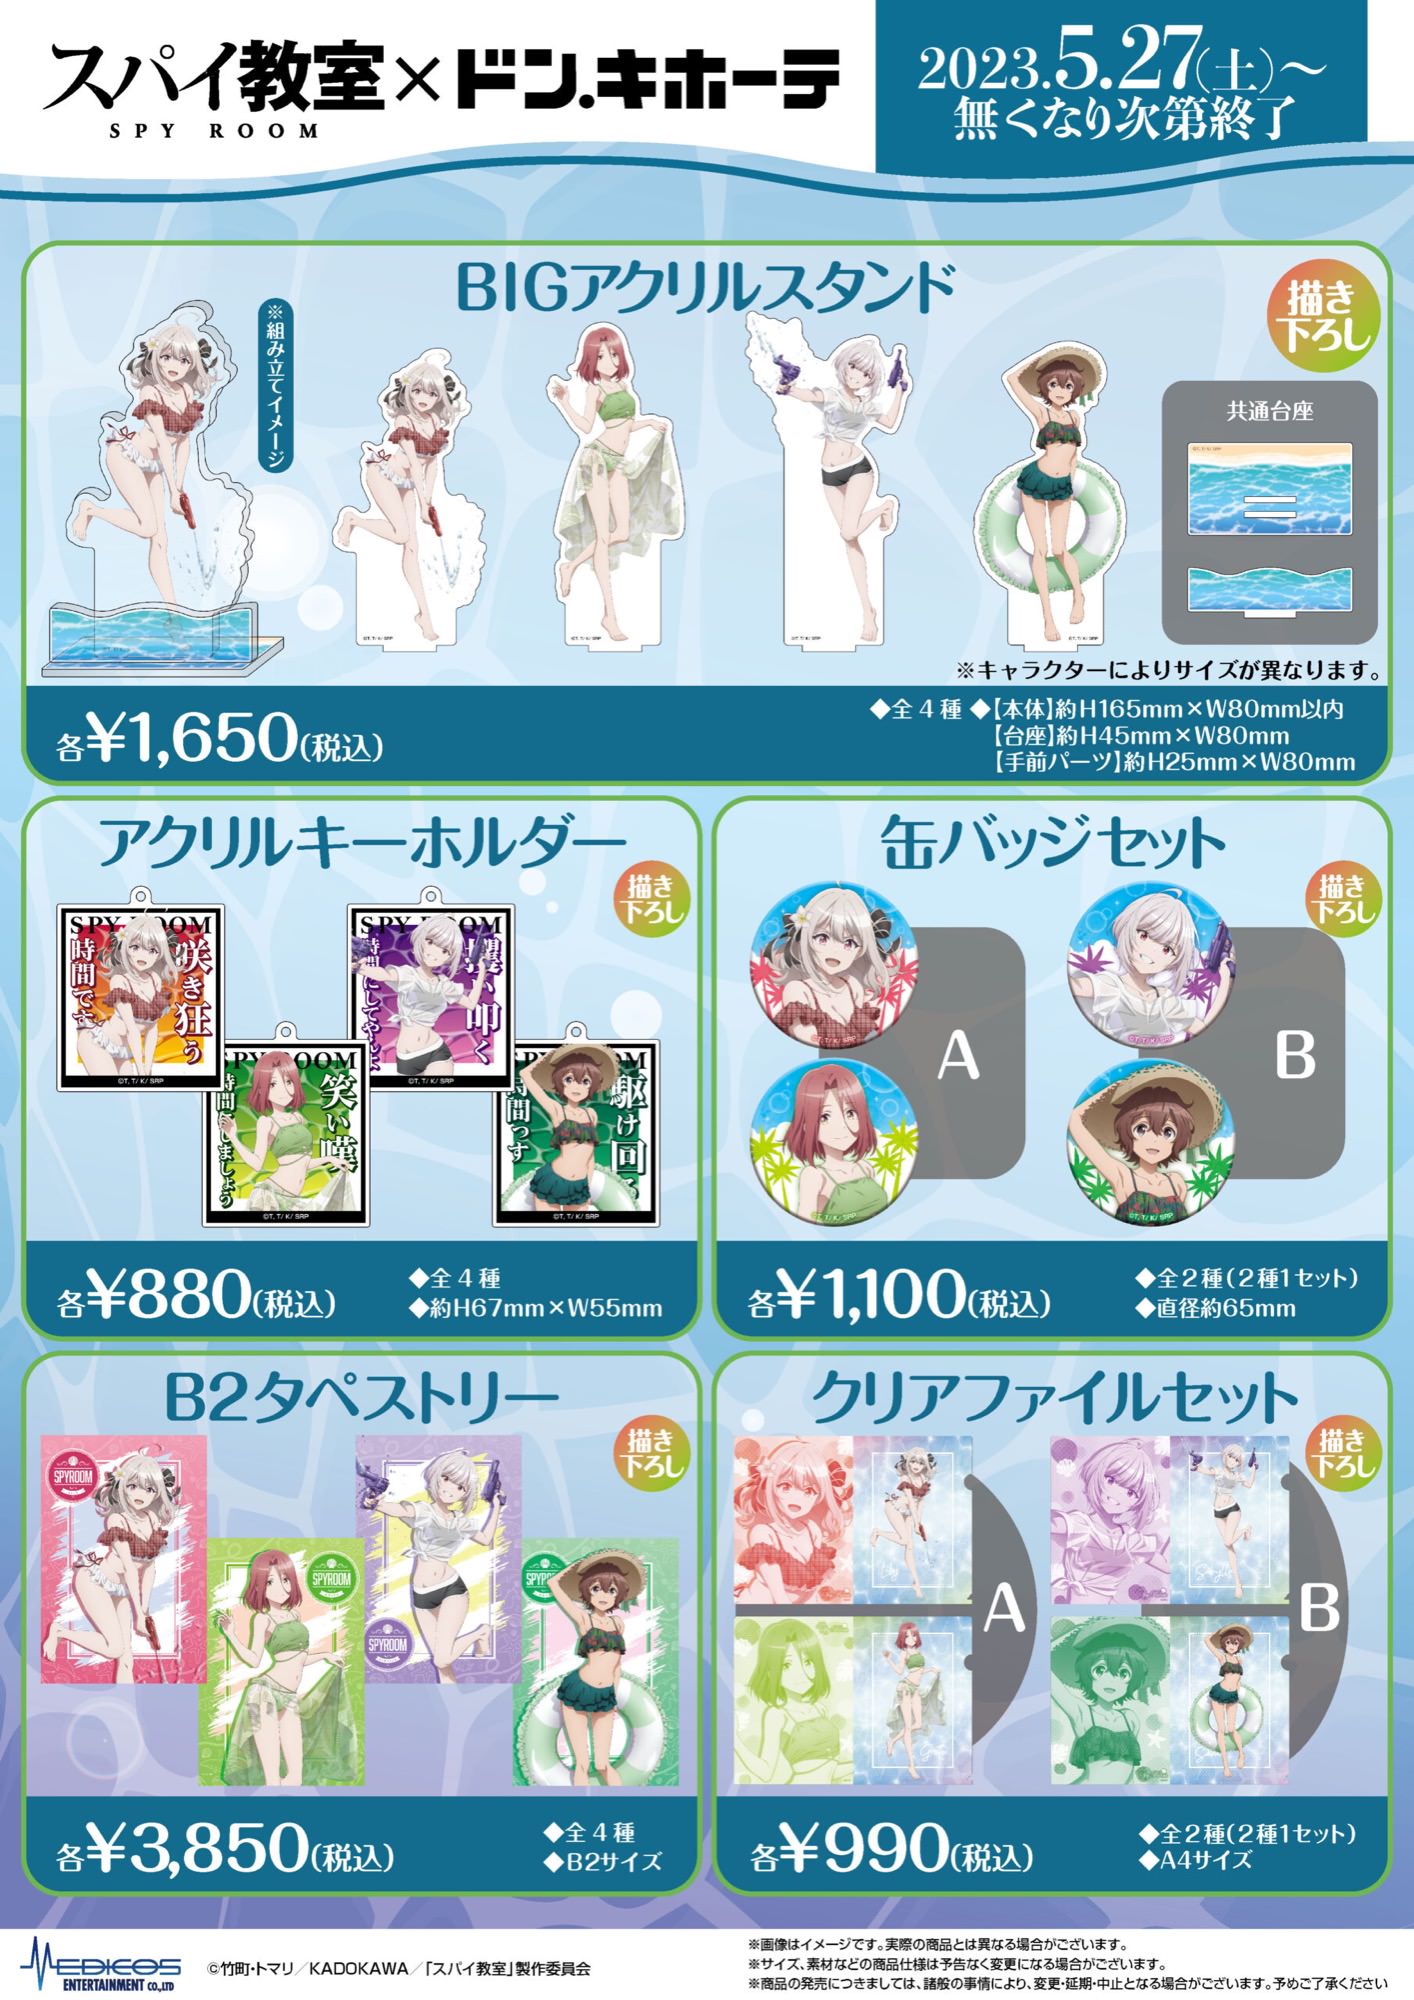 スパイ教室 × ドンキホーテ 5月27日より水着姿の描き下ろしグッズ発売!